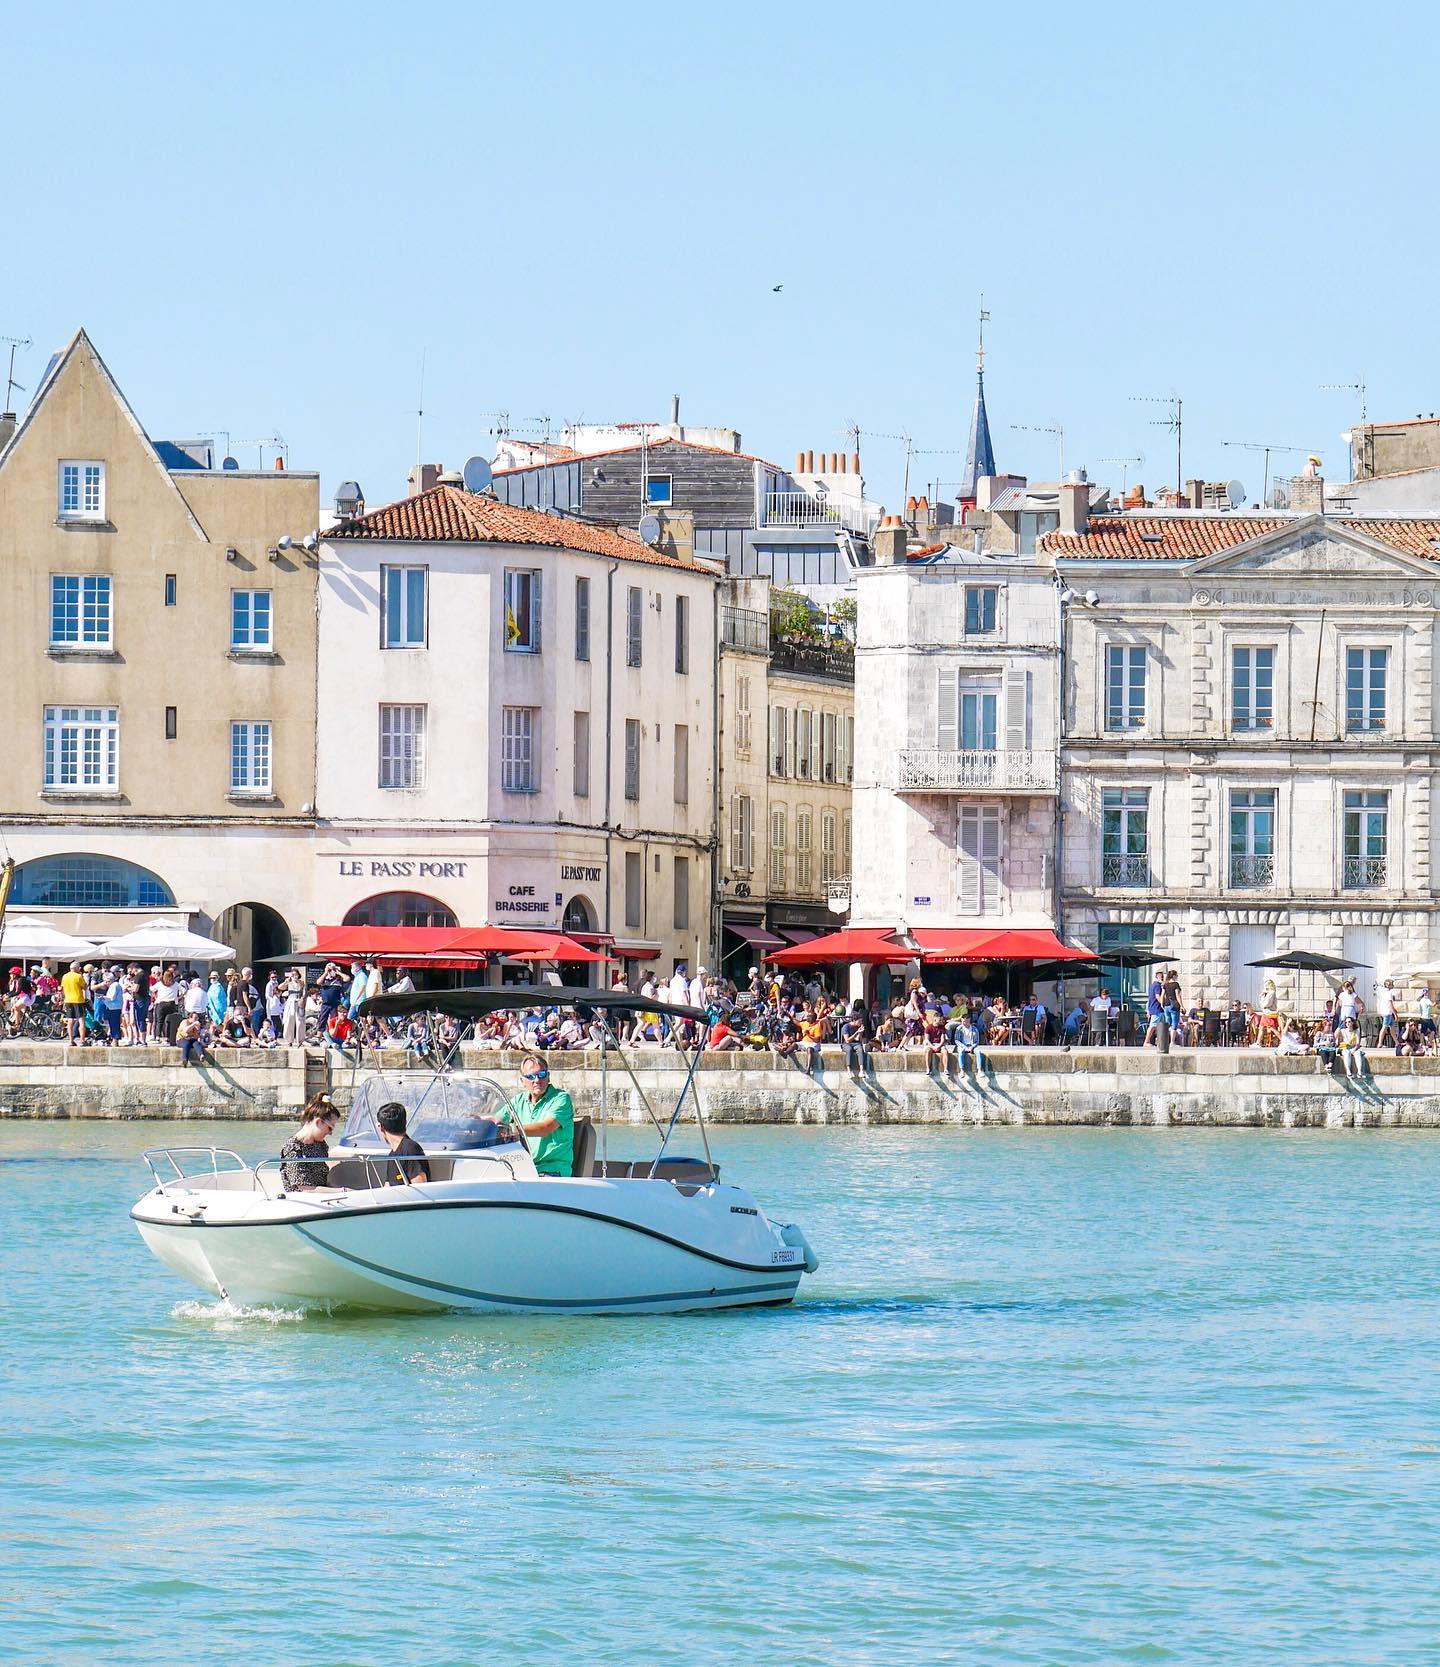 Un air du sud ? Eh non, c'est La Rochelle !
A chaque fois que je viens, je redécouvre la ville 😊
.
#larochelle #igerslarochelle #igerscharentemaritime #infinimentcharentes #charentemaritime #charentemaritimetoursime #super_france #hello_france #france_focus_on #yourhappyfrance #visitlafrance #passionpassport #lumixfr #boat #travellingthroughtheworld #cetetejevisitelafrance